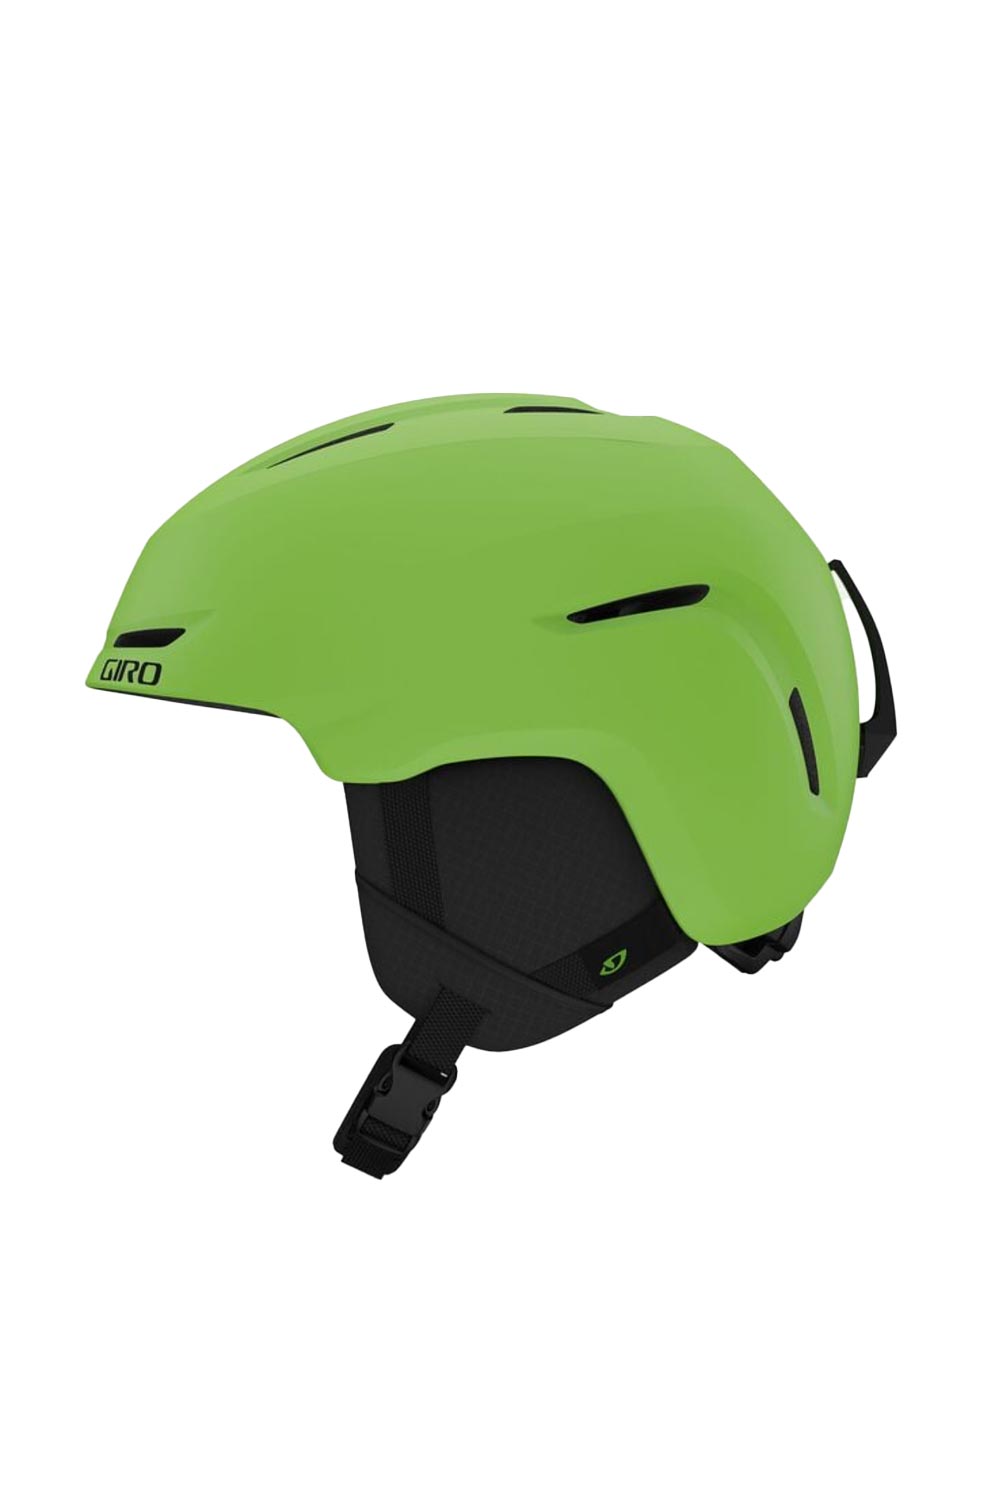 Kids' Giro Spur ski helmet, lime green